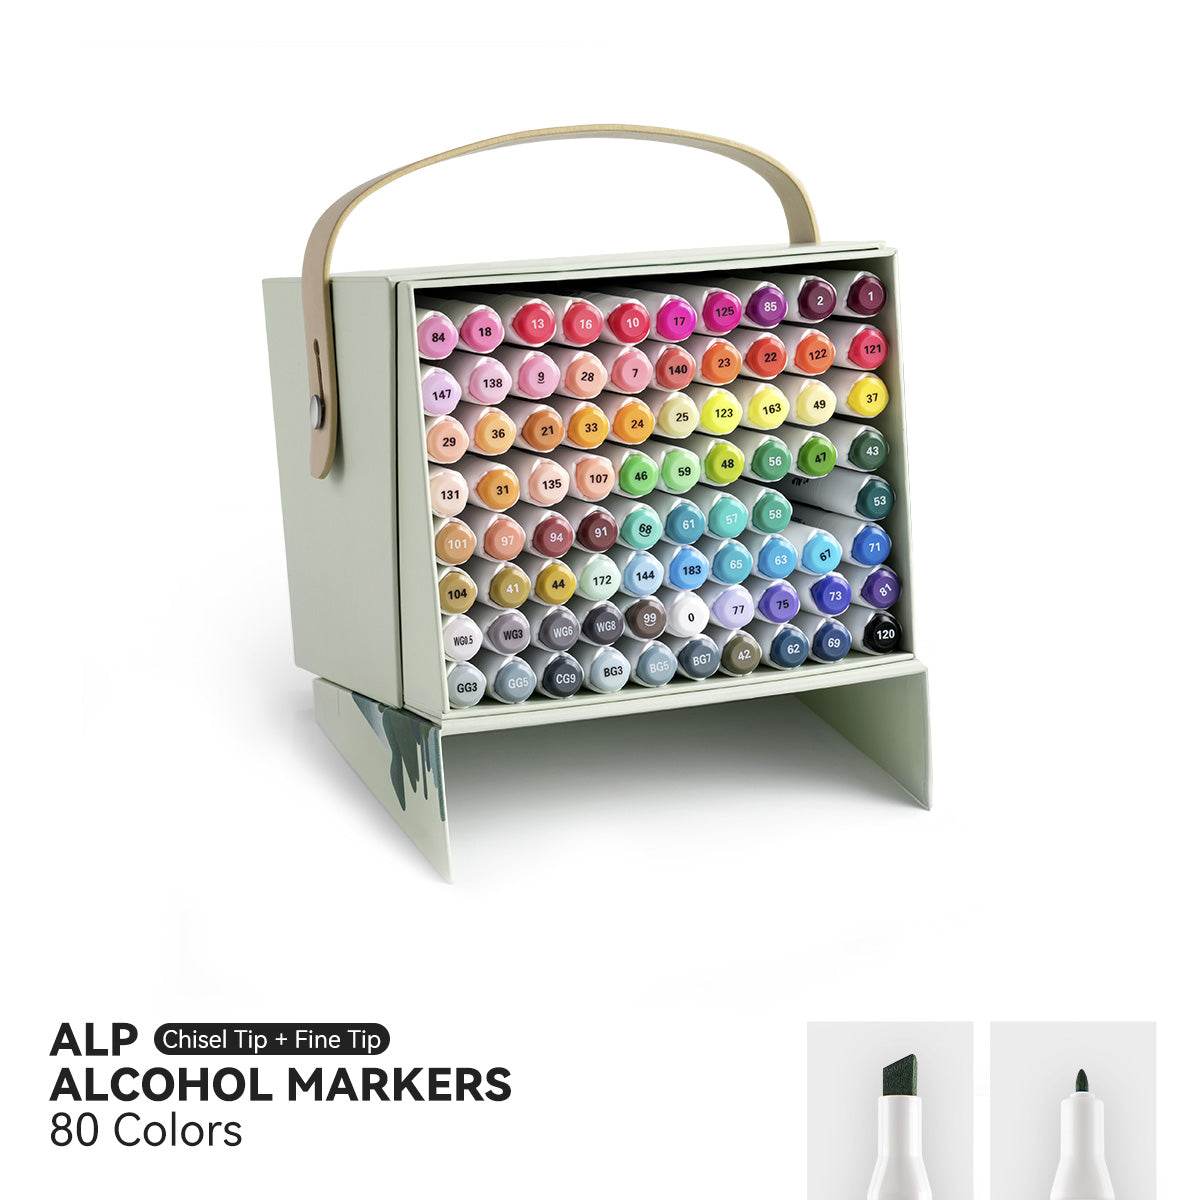 Arrtx ALP 80 Colors Alcohol Markers Paint Pen Set